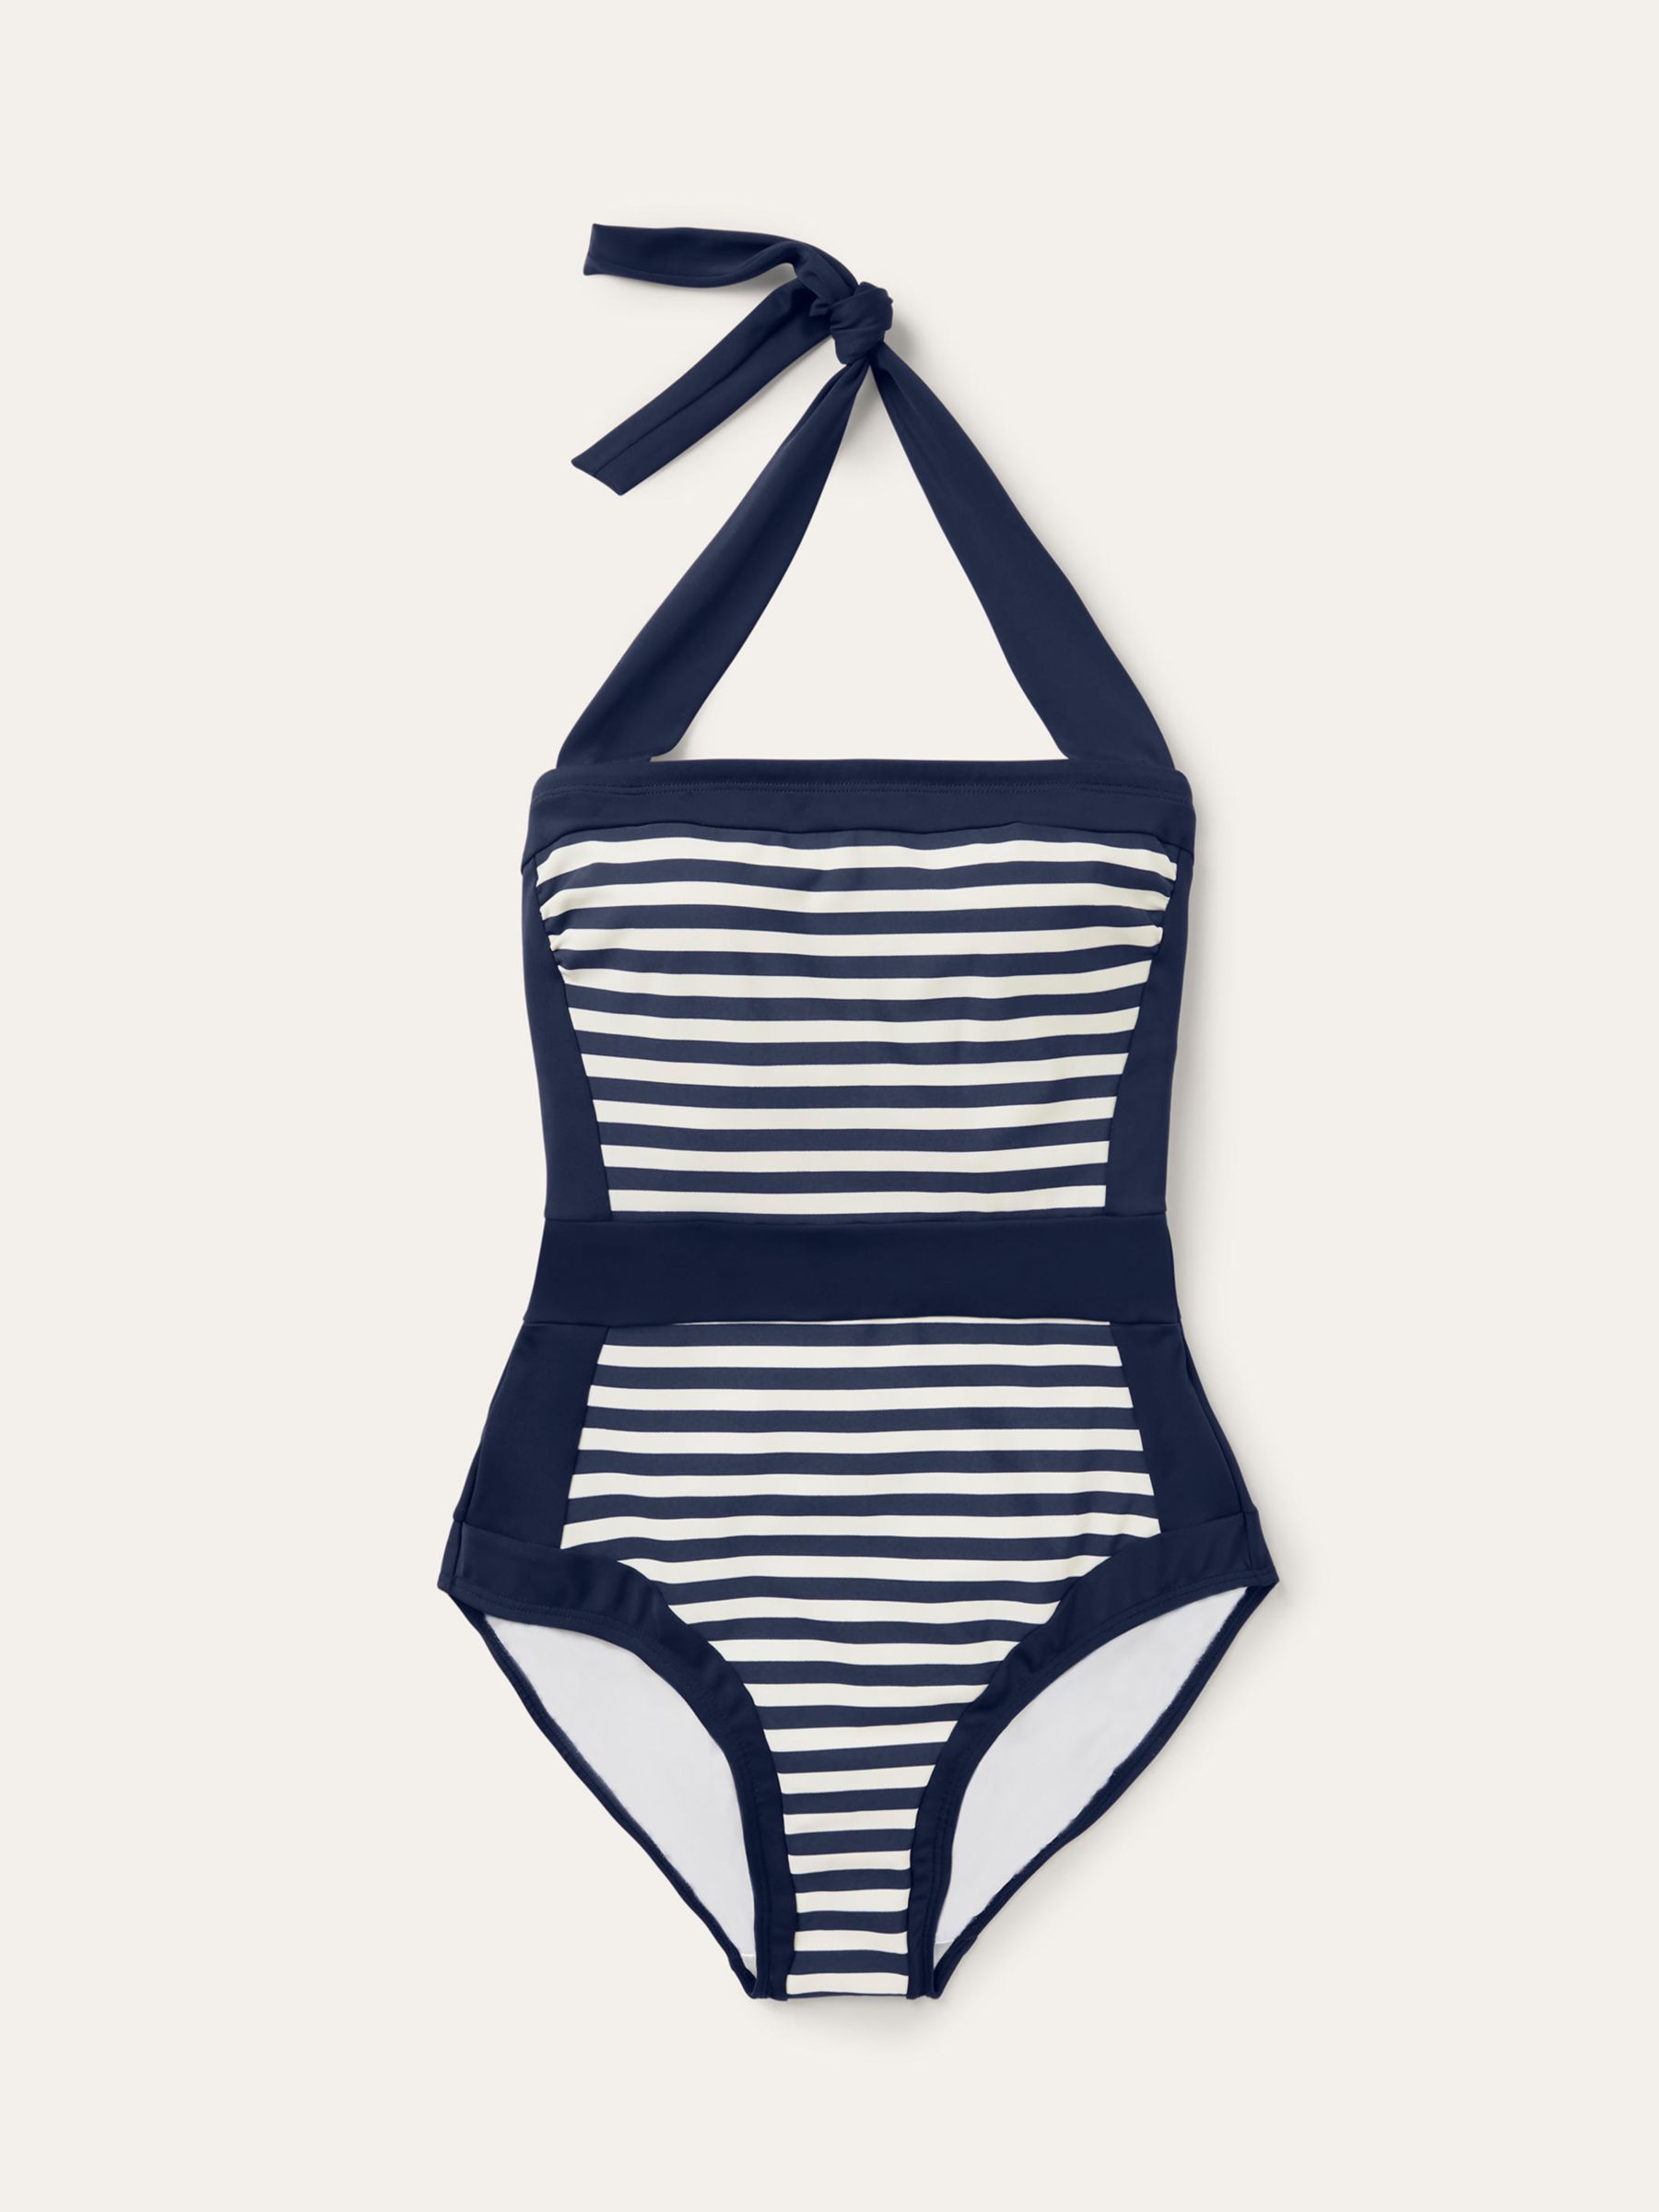 Boden Santorini Stripe Swimsuit, French Navy/Ivory, 8